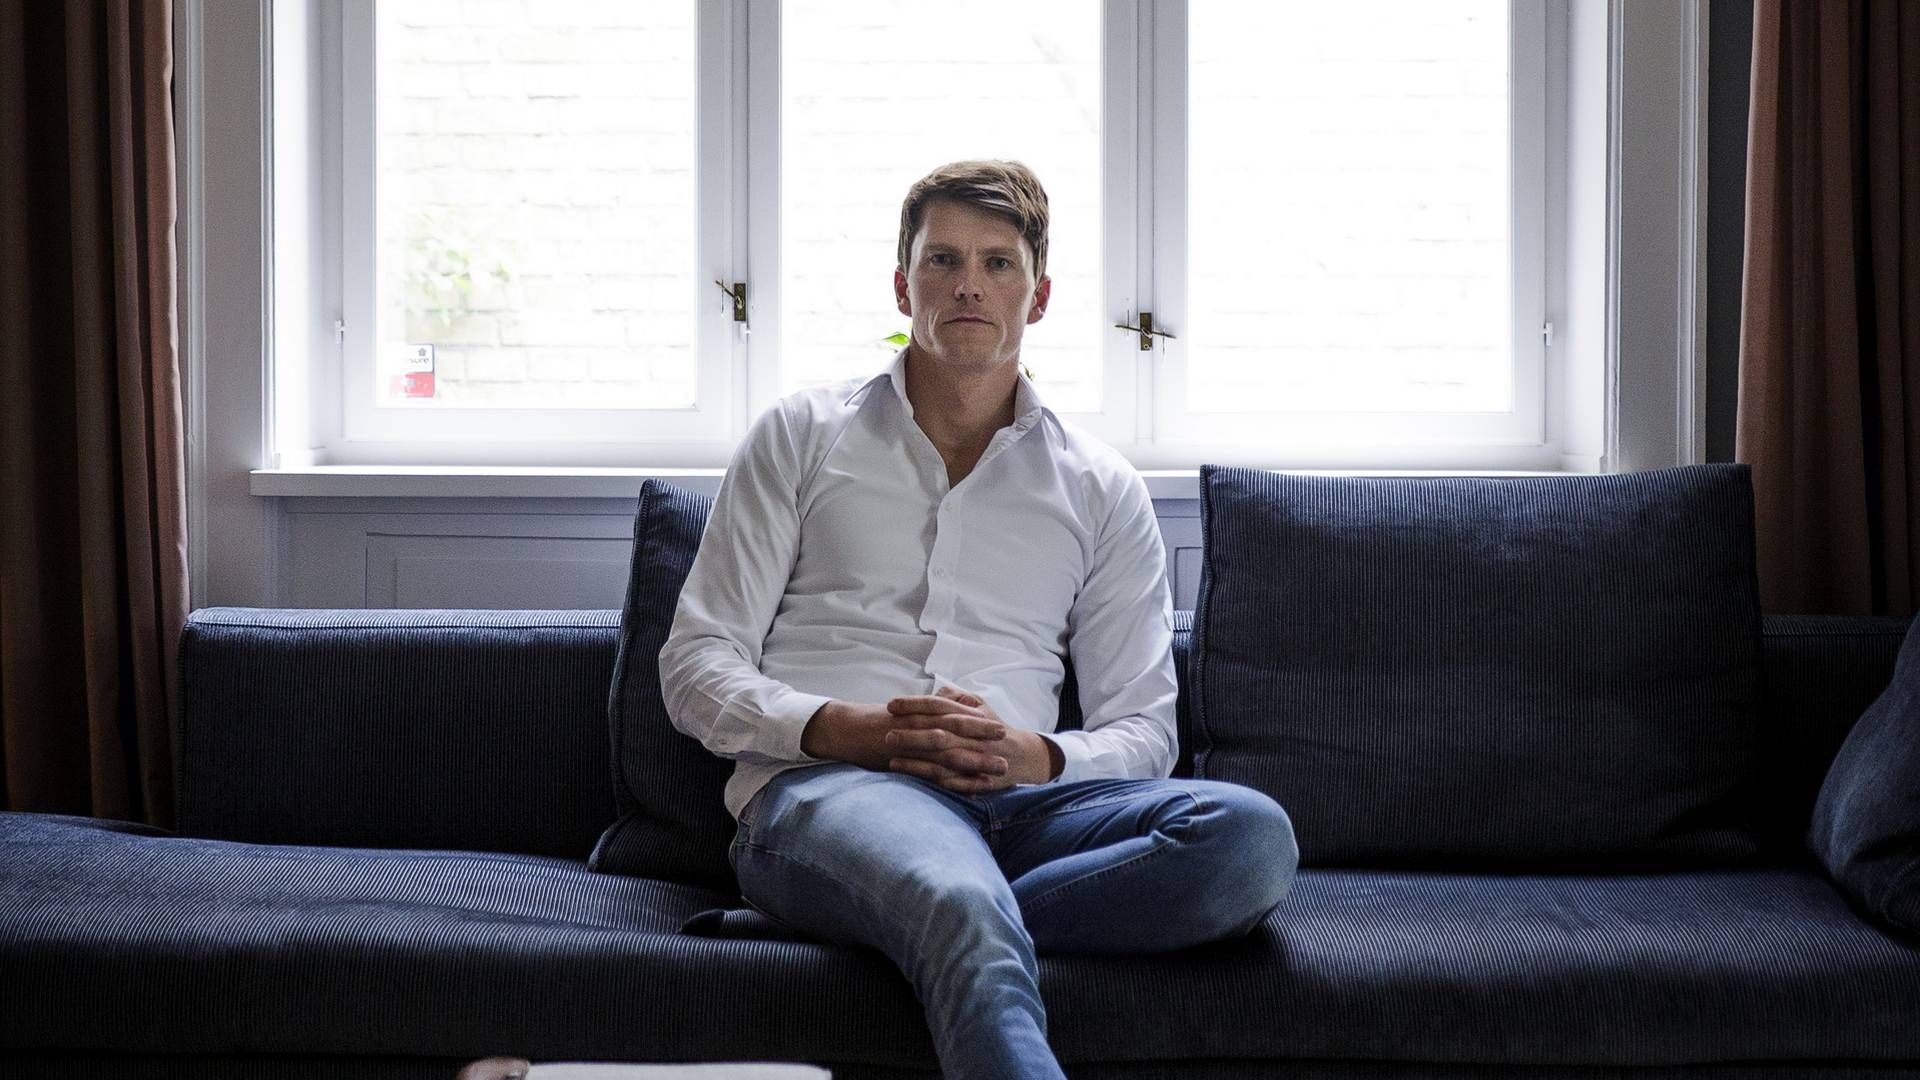 Pleo-stifter og adm. direktør Jeppe Rindom kan glæde sig over, at Pleo har hentet mest frisk kapital i 2021 blandt de danske fintech-selskaber. | Foto: Anders Rye Skjoldjensen